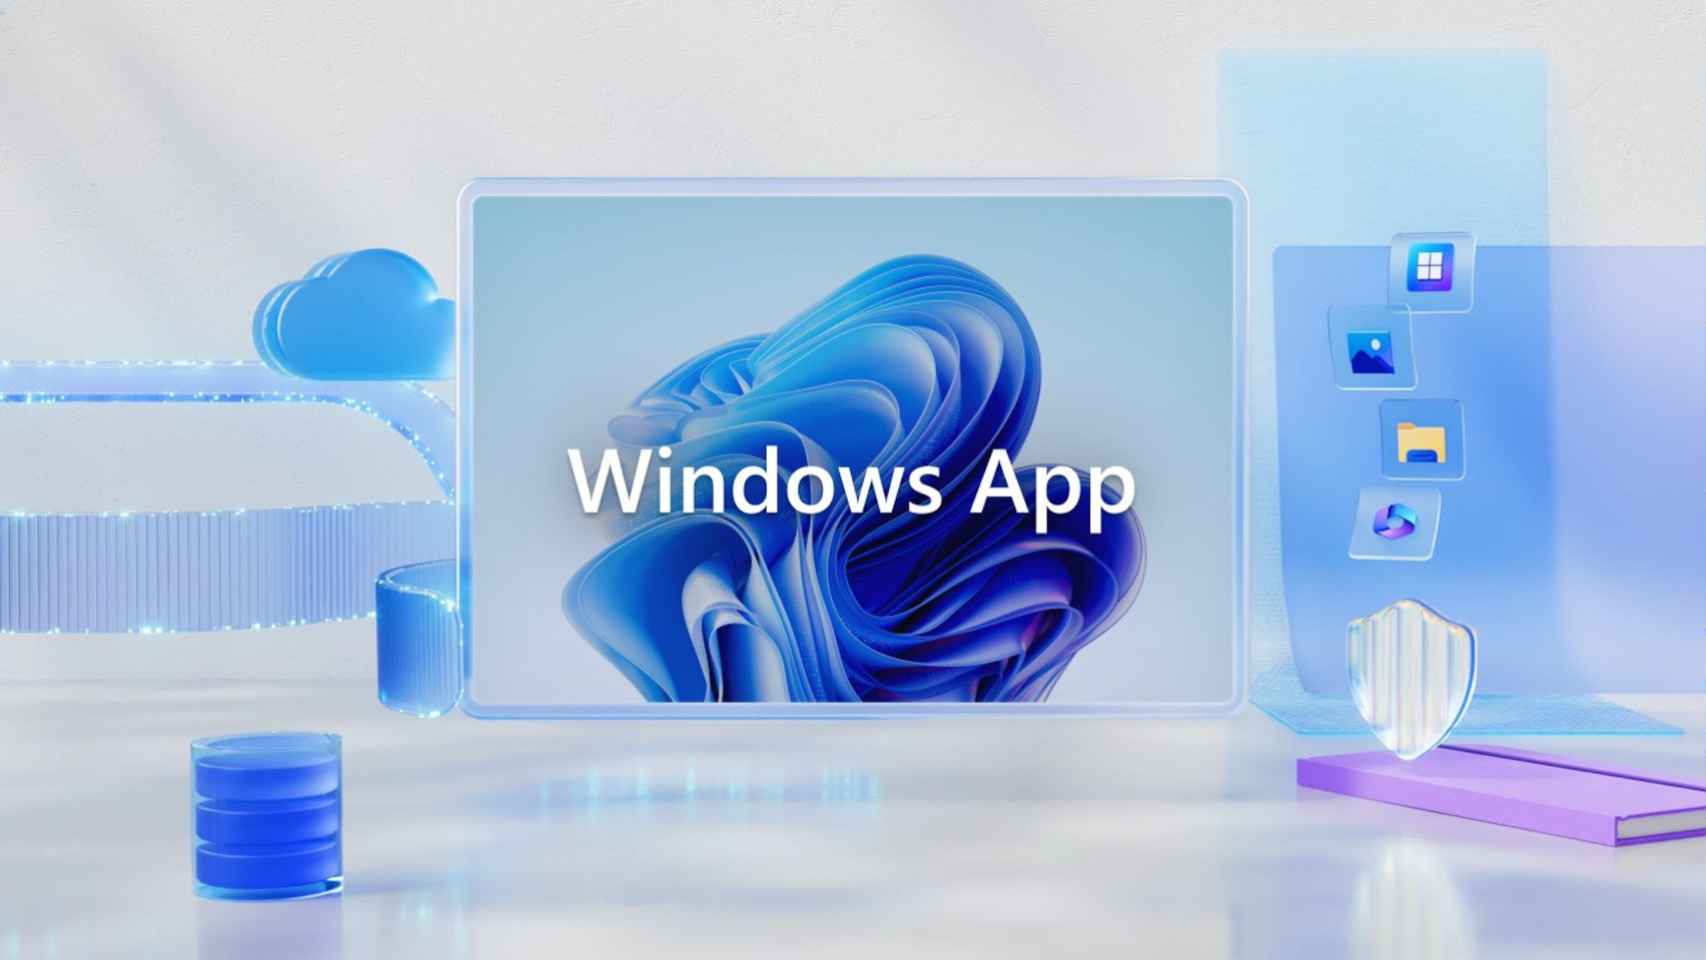 Imagen promocional de la nueva app de Windows